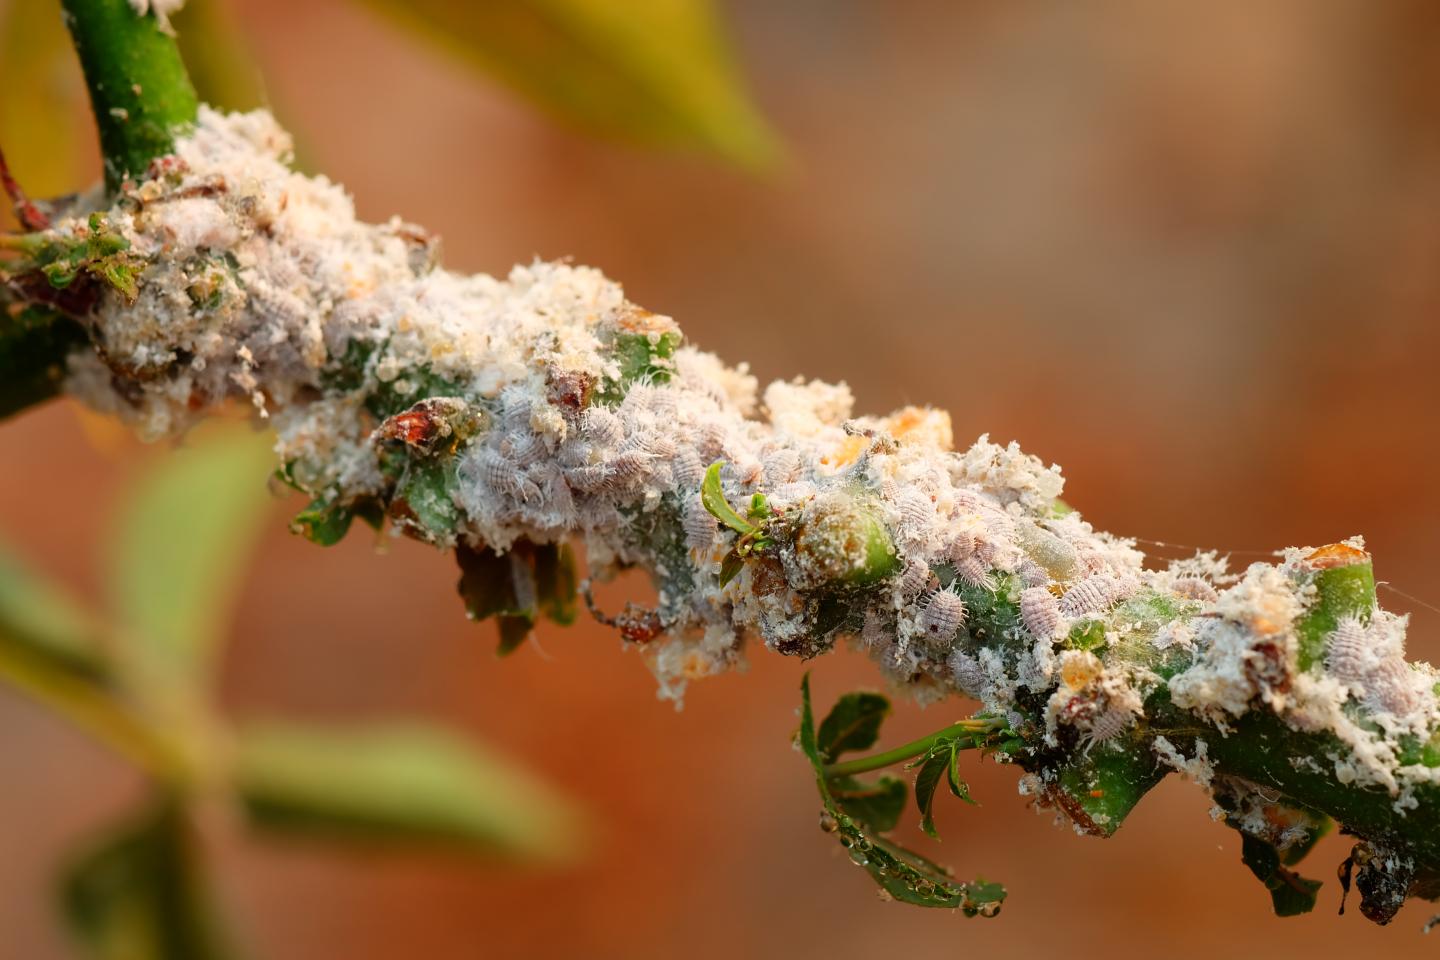 Invasive Mealybugs (Hemiptera) on a Cassava Stem in eastern Thailand